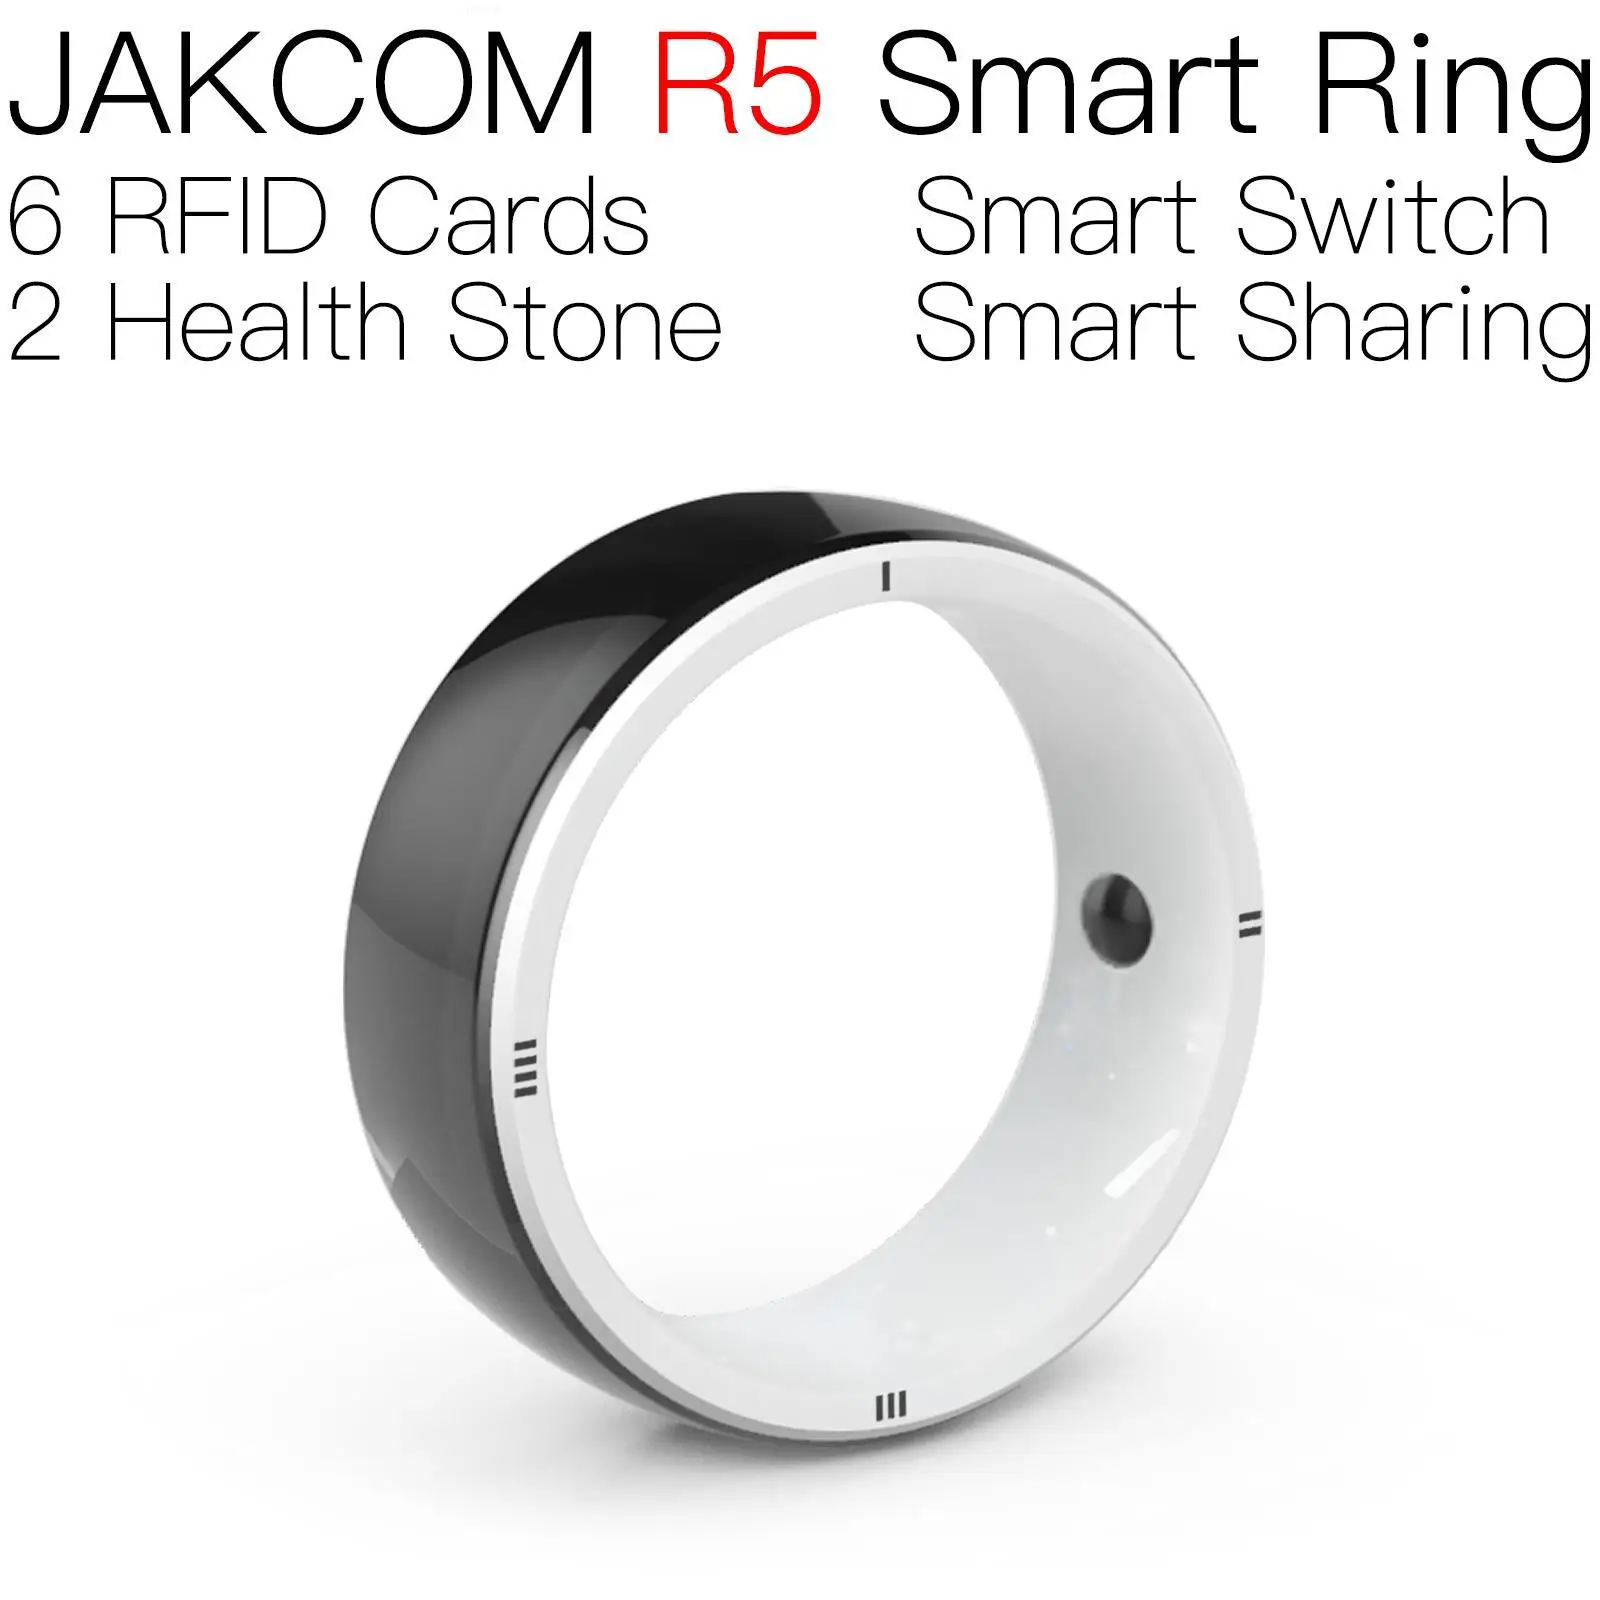 

Умное кольцо JAKCOM R5, подходит для Группы 6, электронная палочка, сделка на первый заказ, бесплатная доставка, умный концентратор 7, короткое ко...